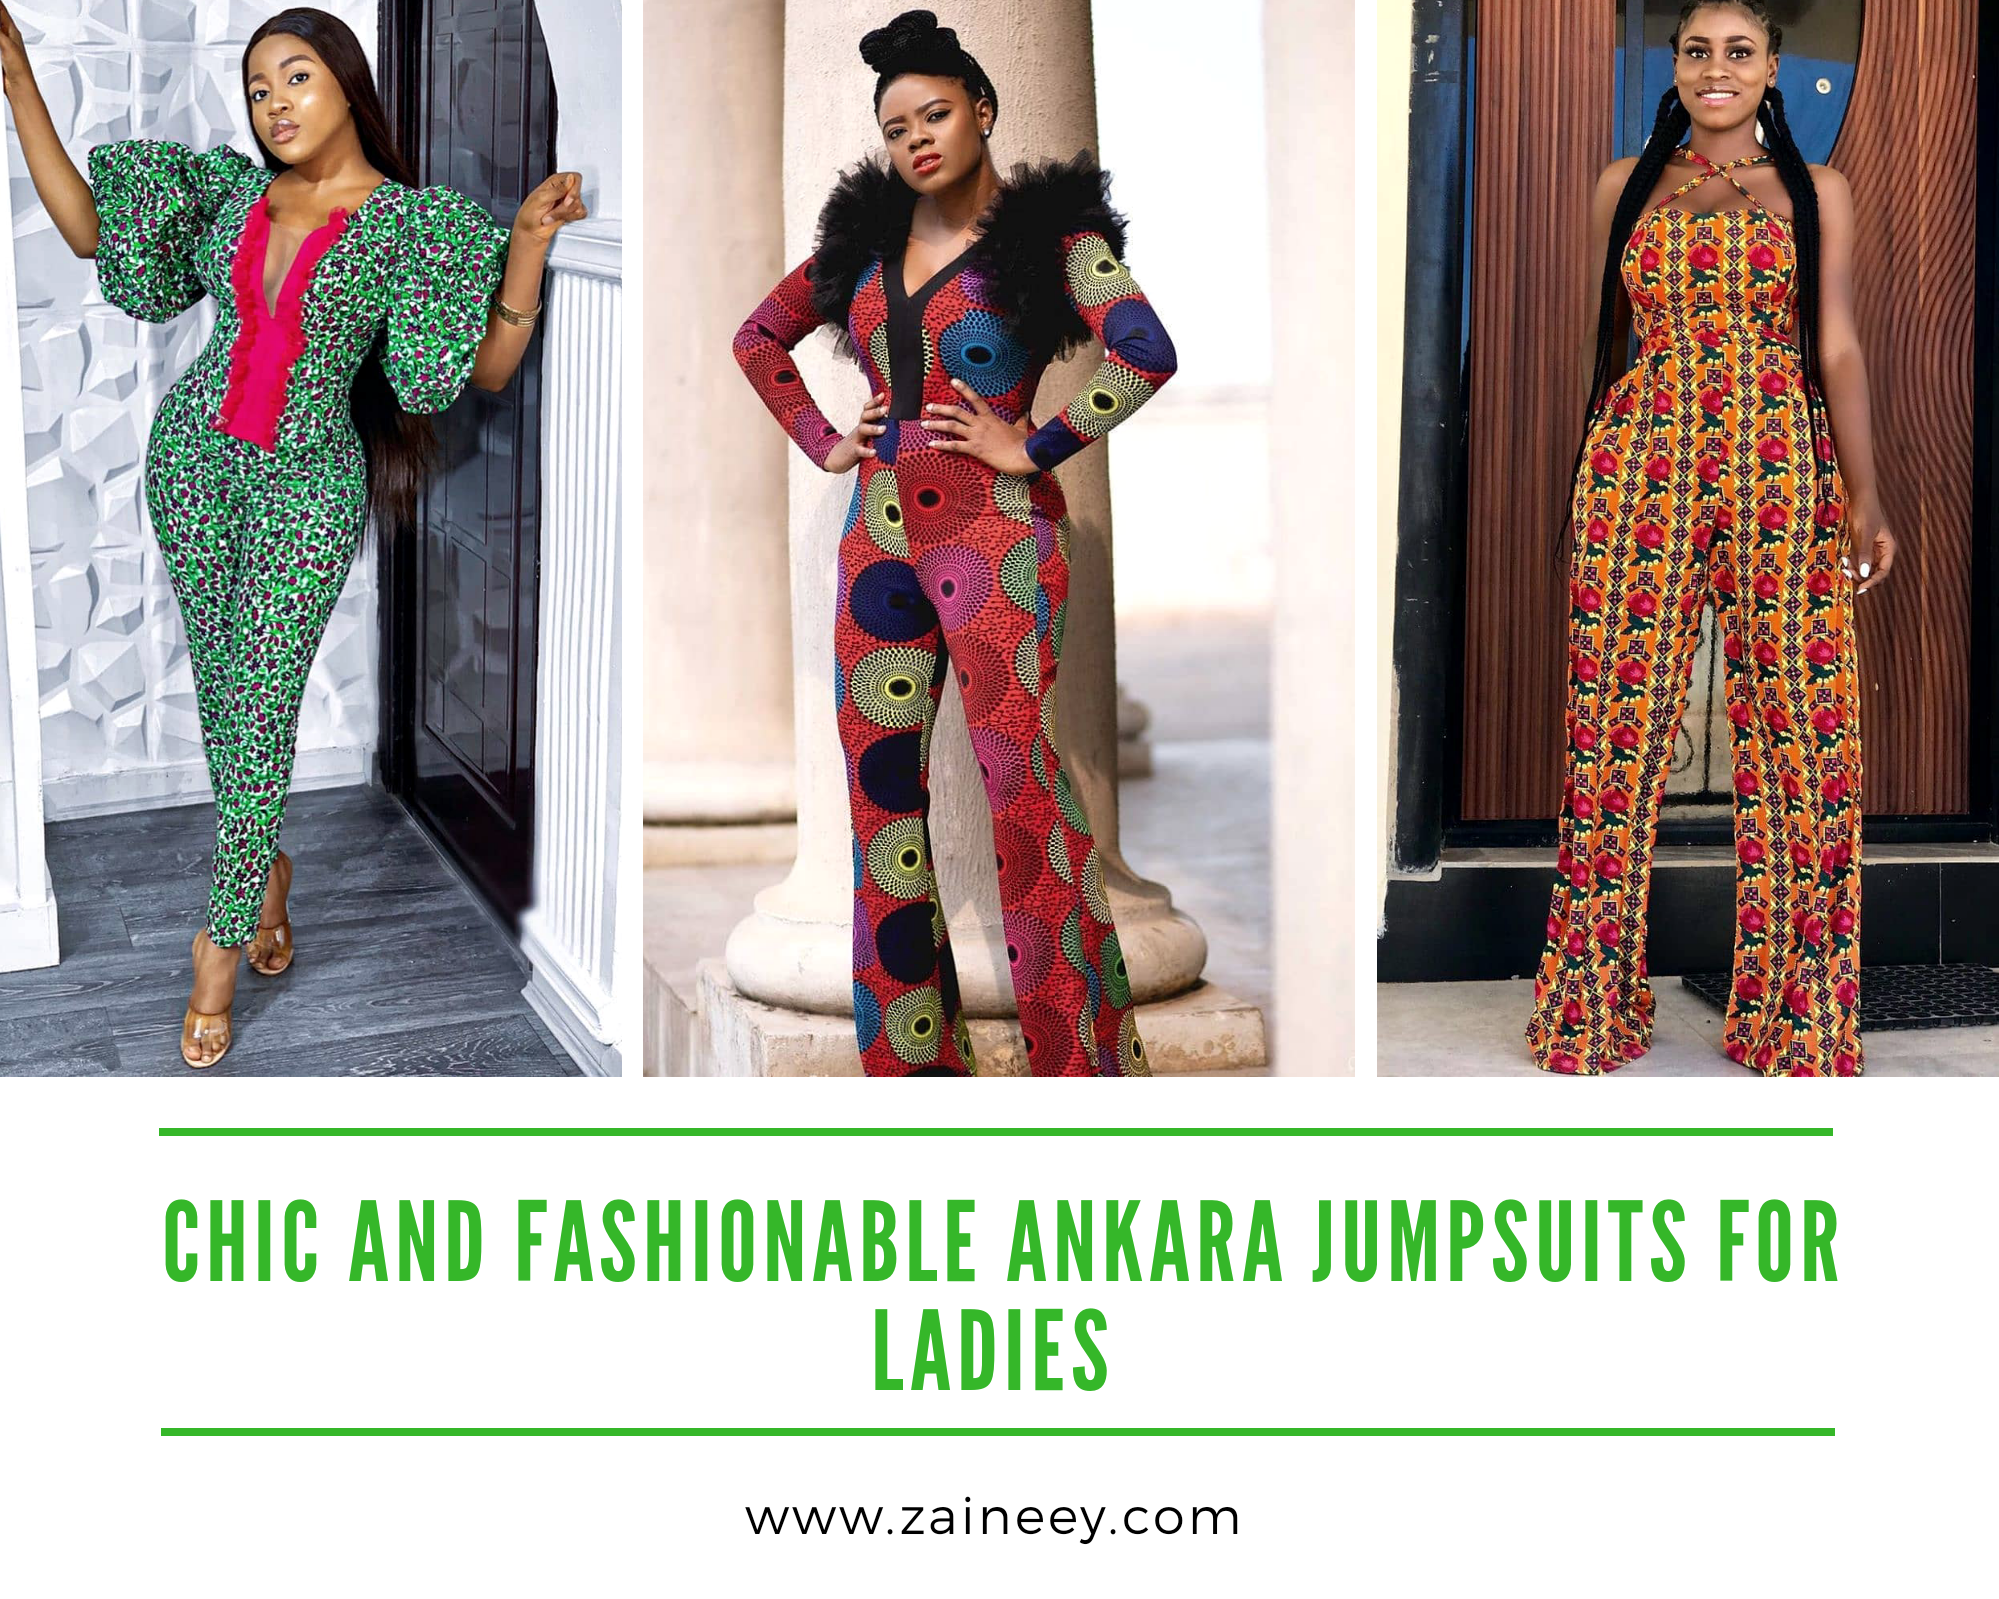 Ankara Jumpsuits: Chic and Fashionable Ankara Jumpsuits for ladies 2020